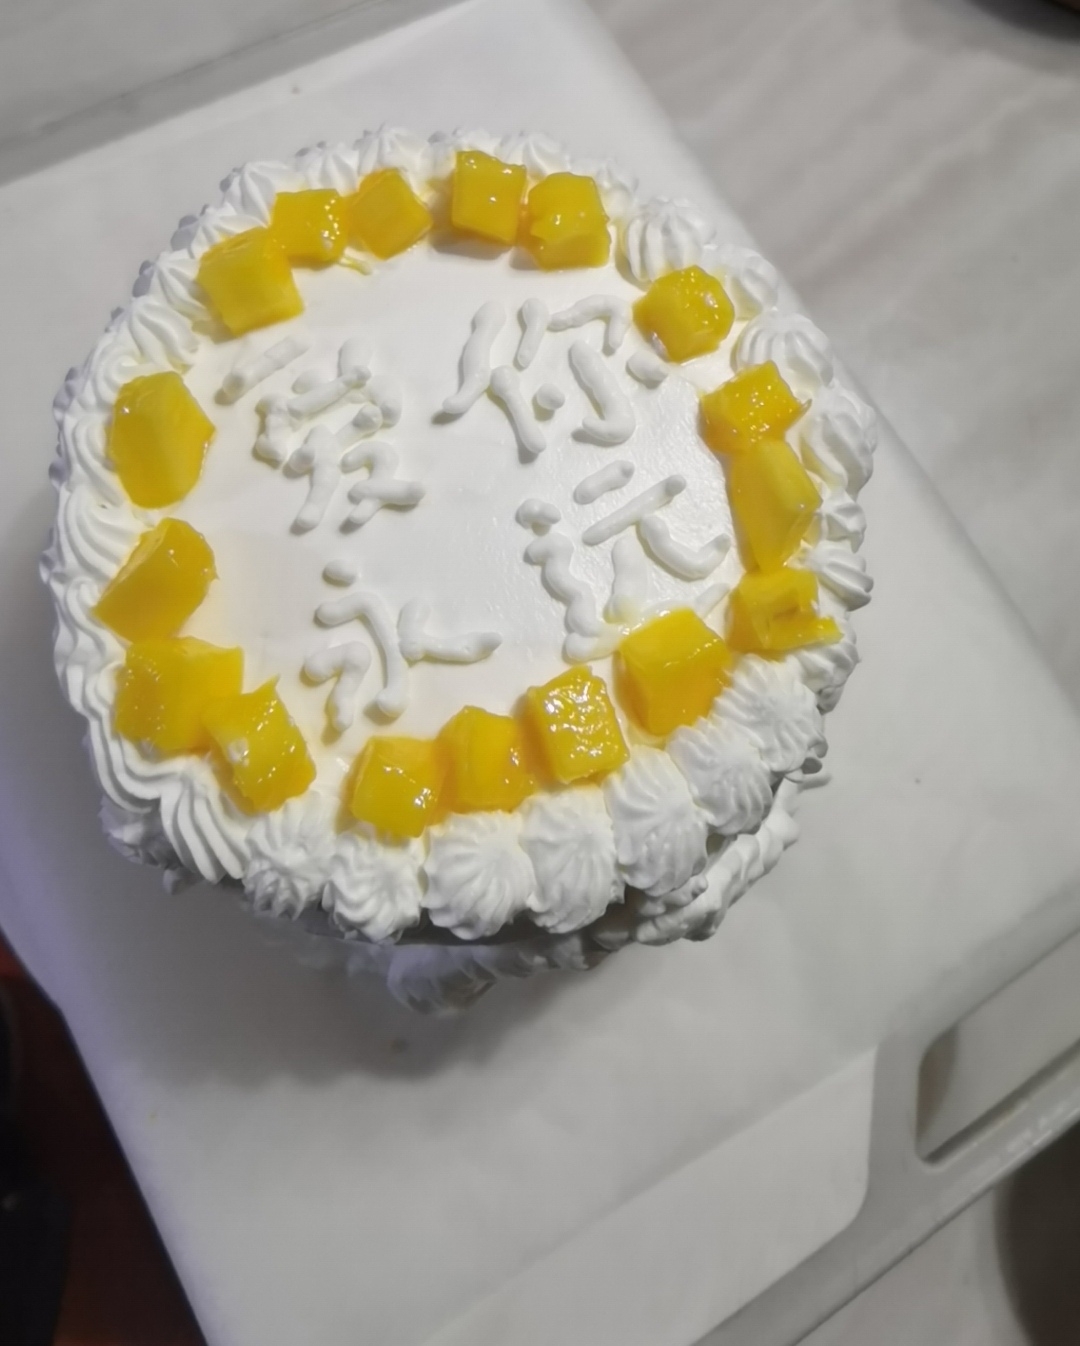 生日蛋糕裱花造型创意图鉴赏大全